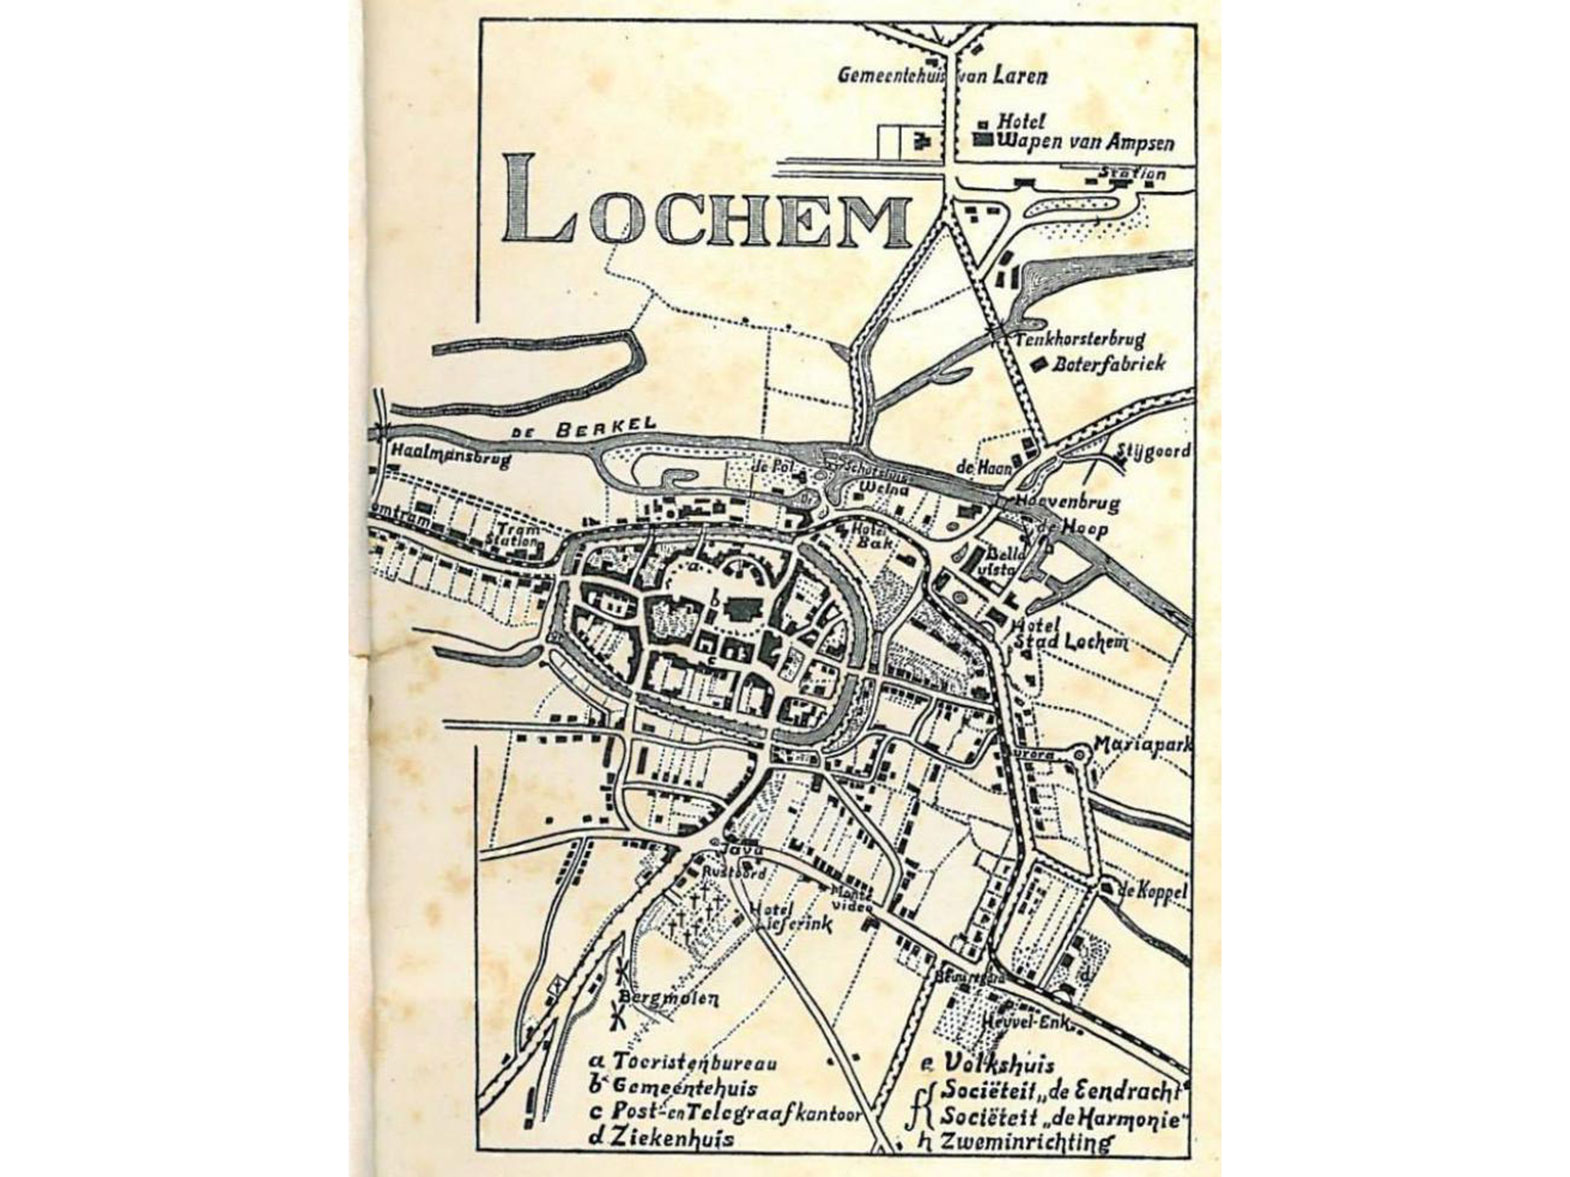 Route van de tram door Lochem